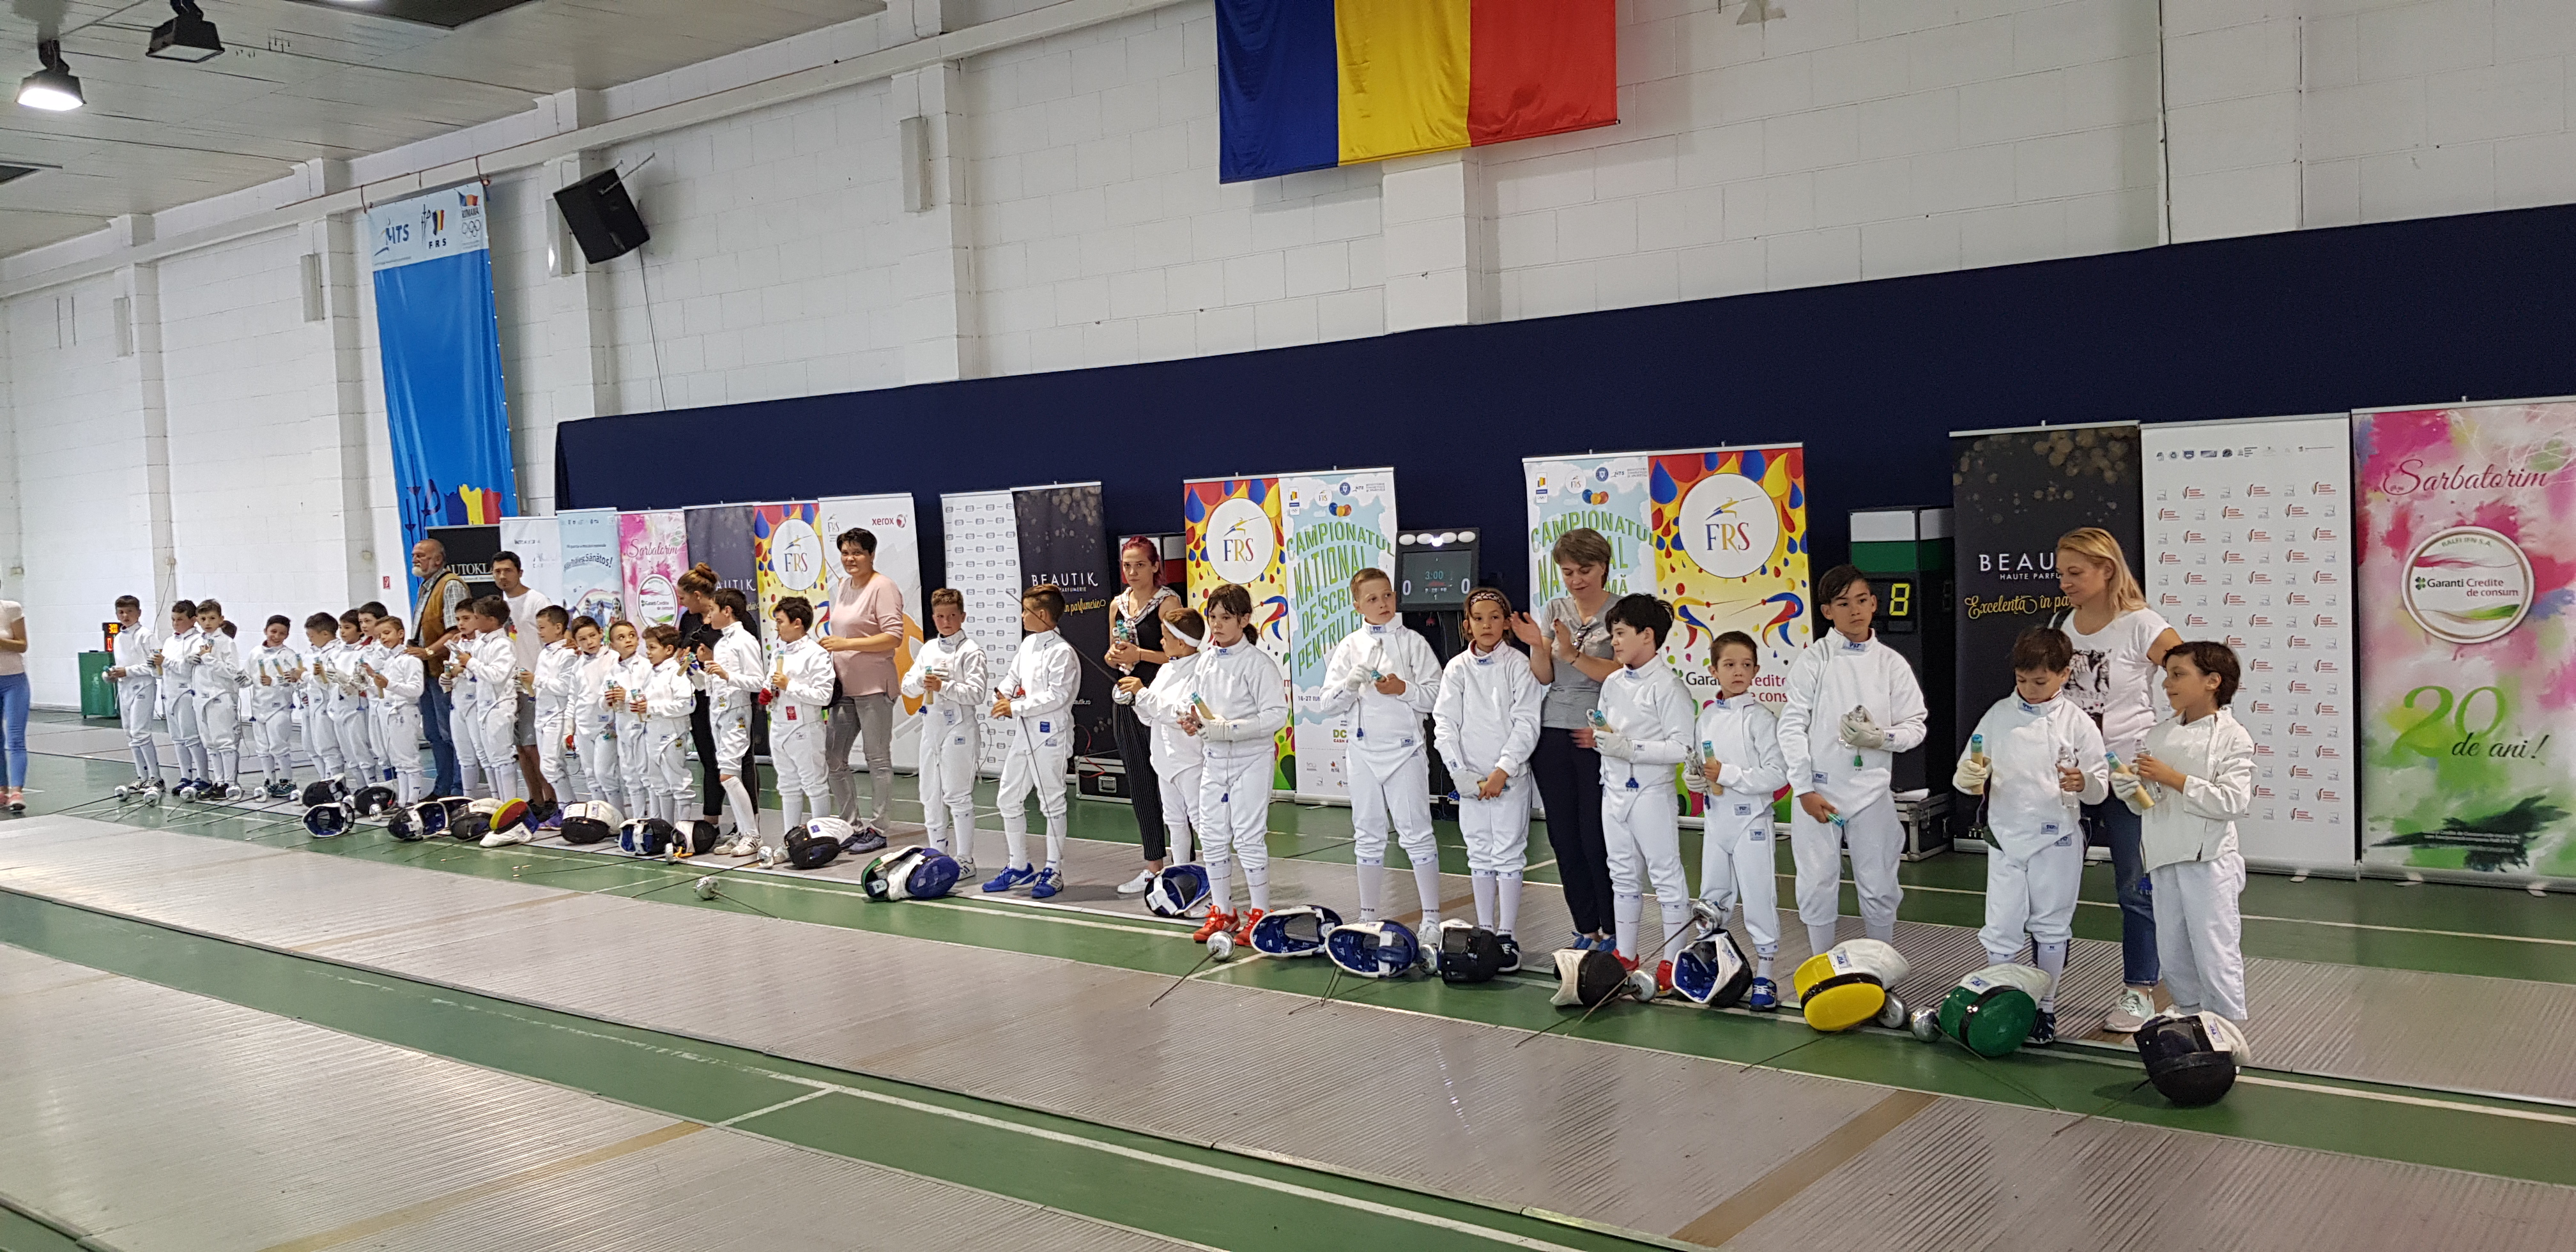 LIVE: Campionatul Național de scrimă pentru copii de la București, ediția 2018, ziua 2: azi au loc probele de spadă masculin la 8-9 ani și pe echipe